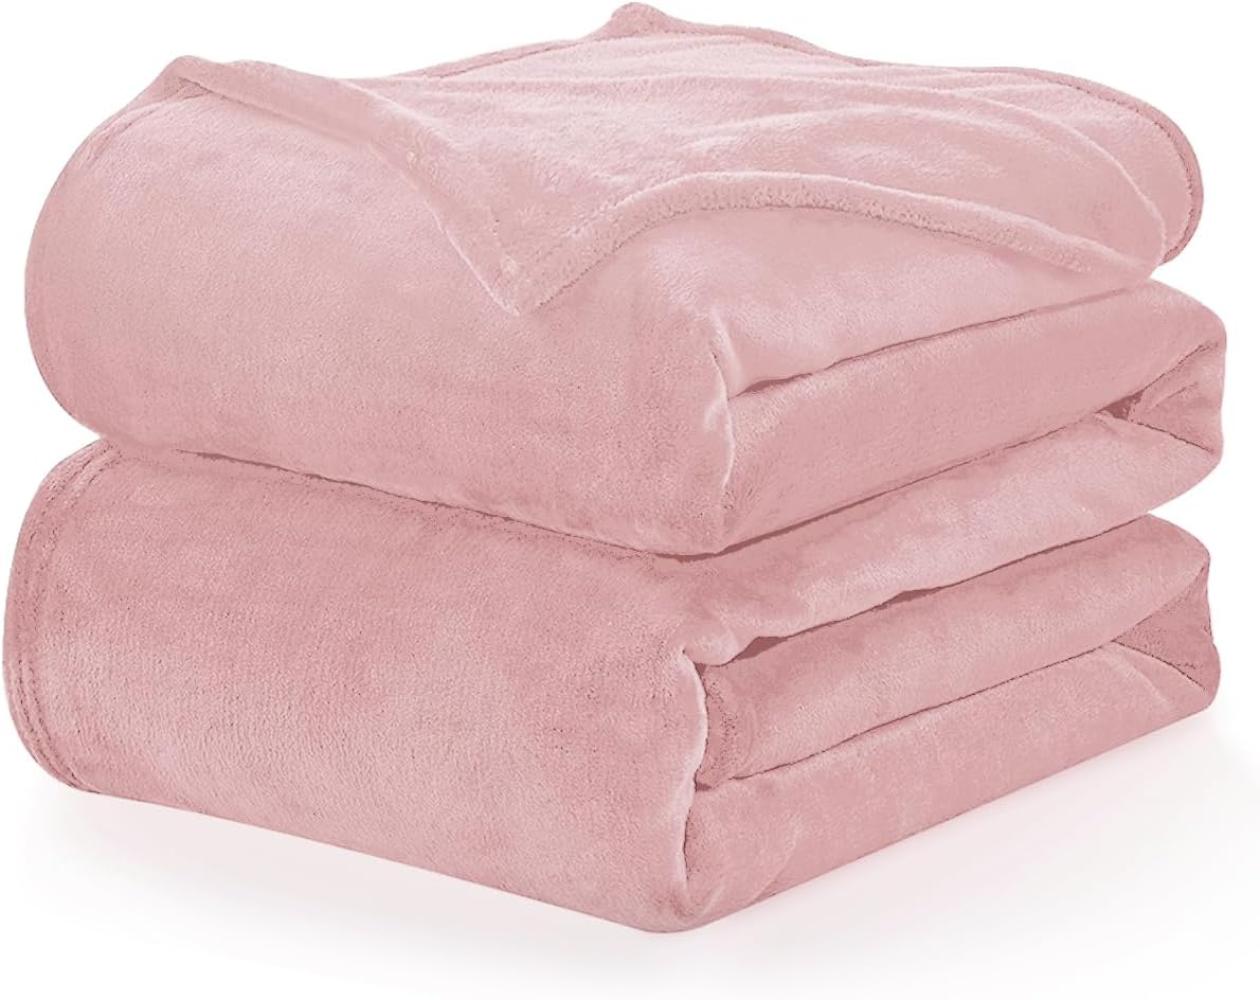 WAVVE Kuscheldecke Flauschige Decke Rosa 130x150 cm - Kleine Fleecedecke Weich und Warm Als Sofadecke, Wohndecke oder Tagesdecke, Decken für Couch Bild 1